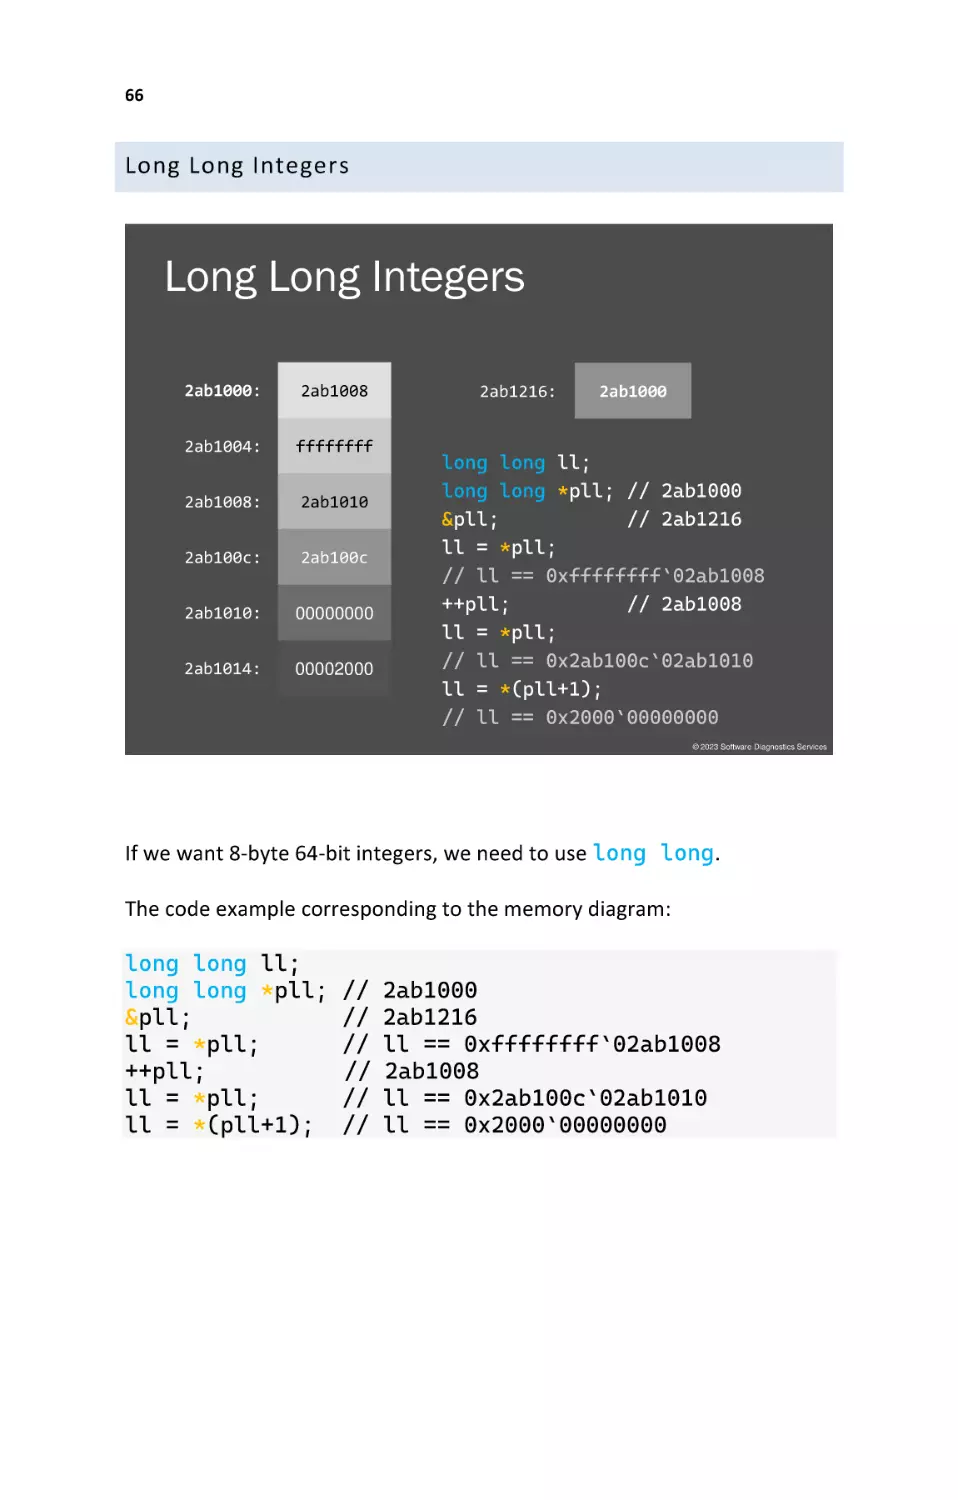 Long Long Integers